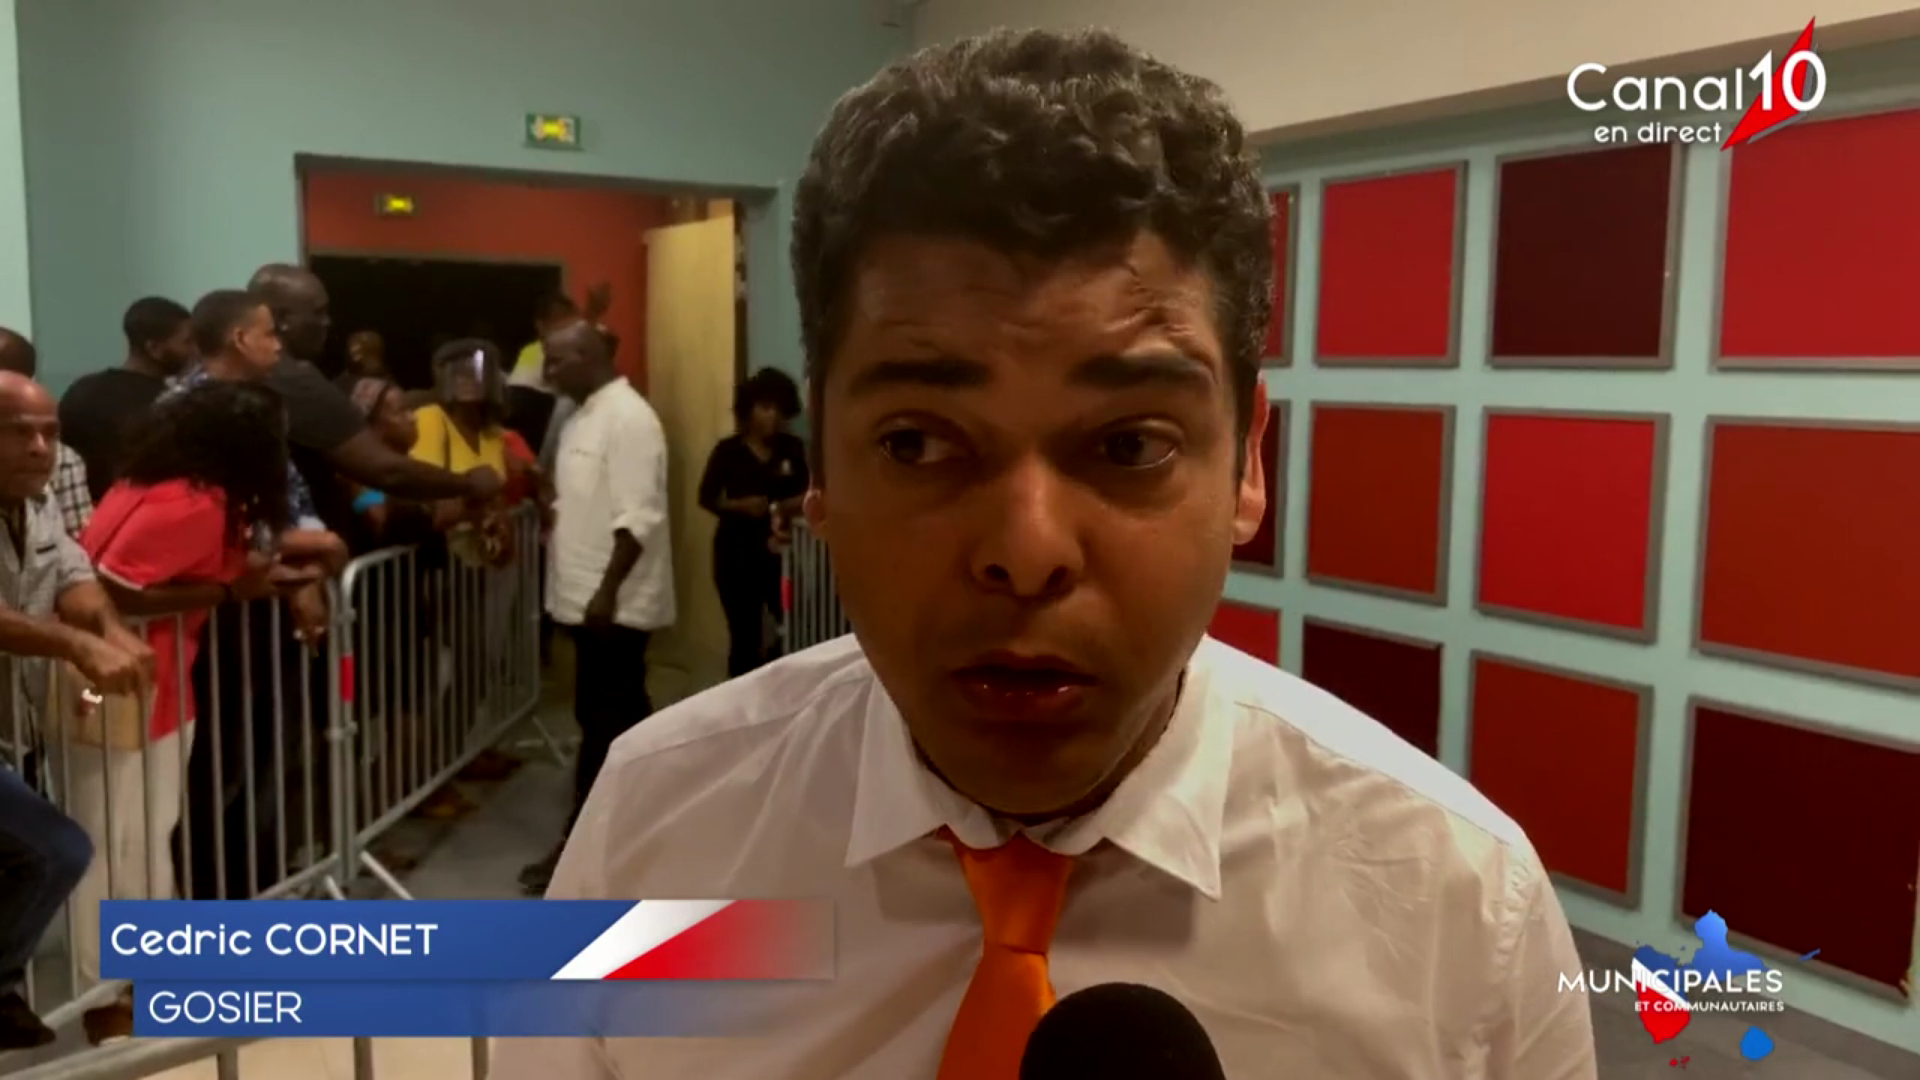 [Vidéo] Onews Guadeloupe Réaction de Cédric CORNET élu Maire du Gosier (Images Canal 10)